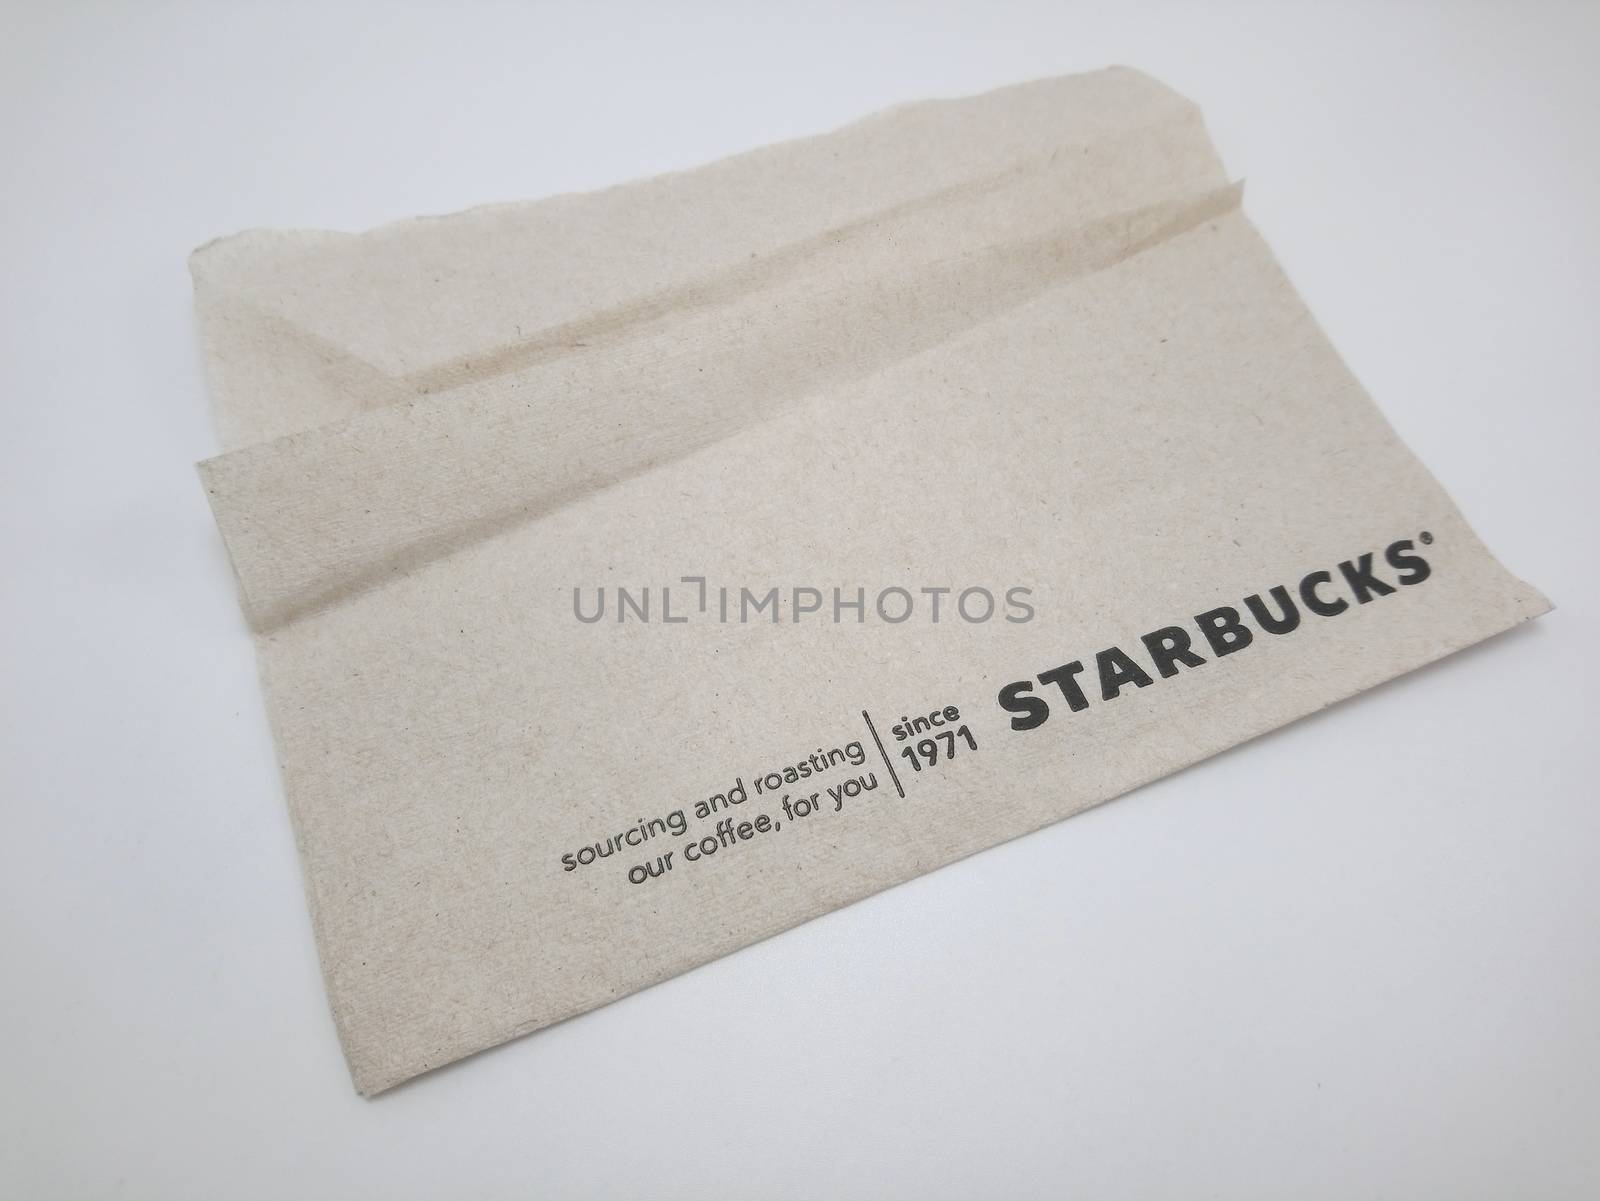 MANILA, PH - SEPT 25 - Starbucks brown tissue paper on September 25, 2020 in Manila, Philippines.